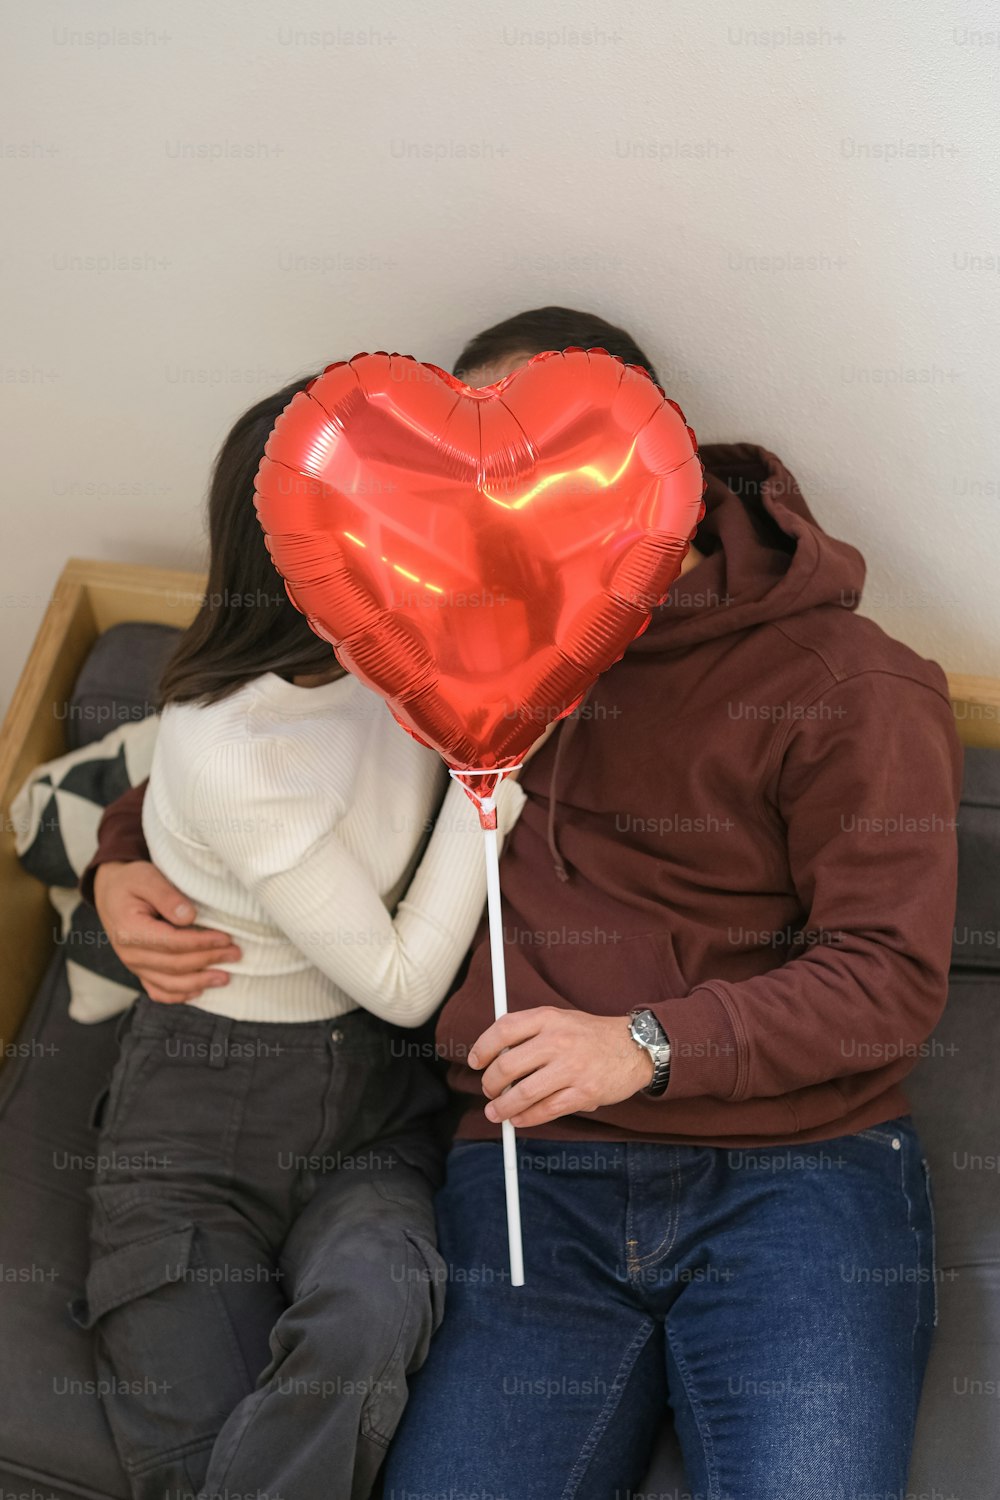 Un homme et une femme assis sur un canapé avec un ballon en forme de cœur